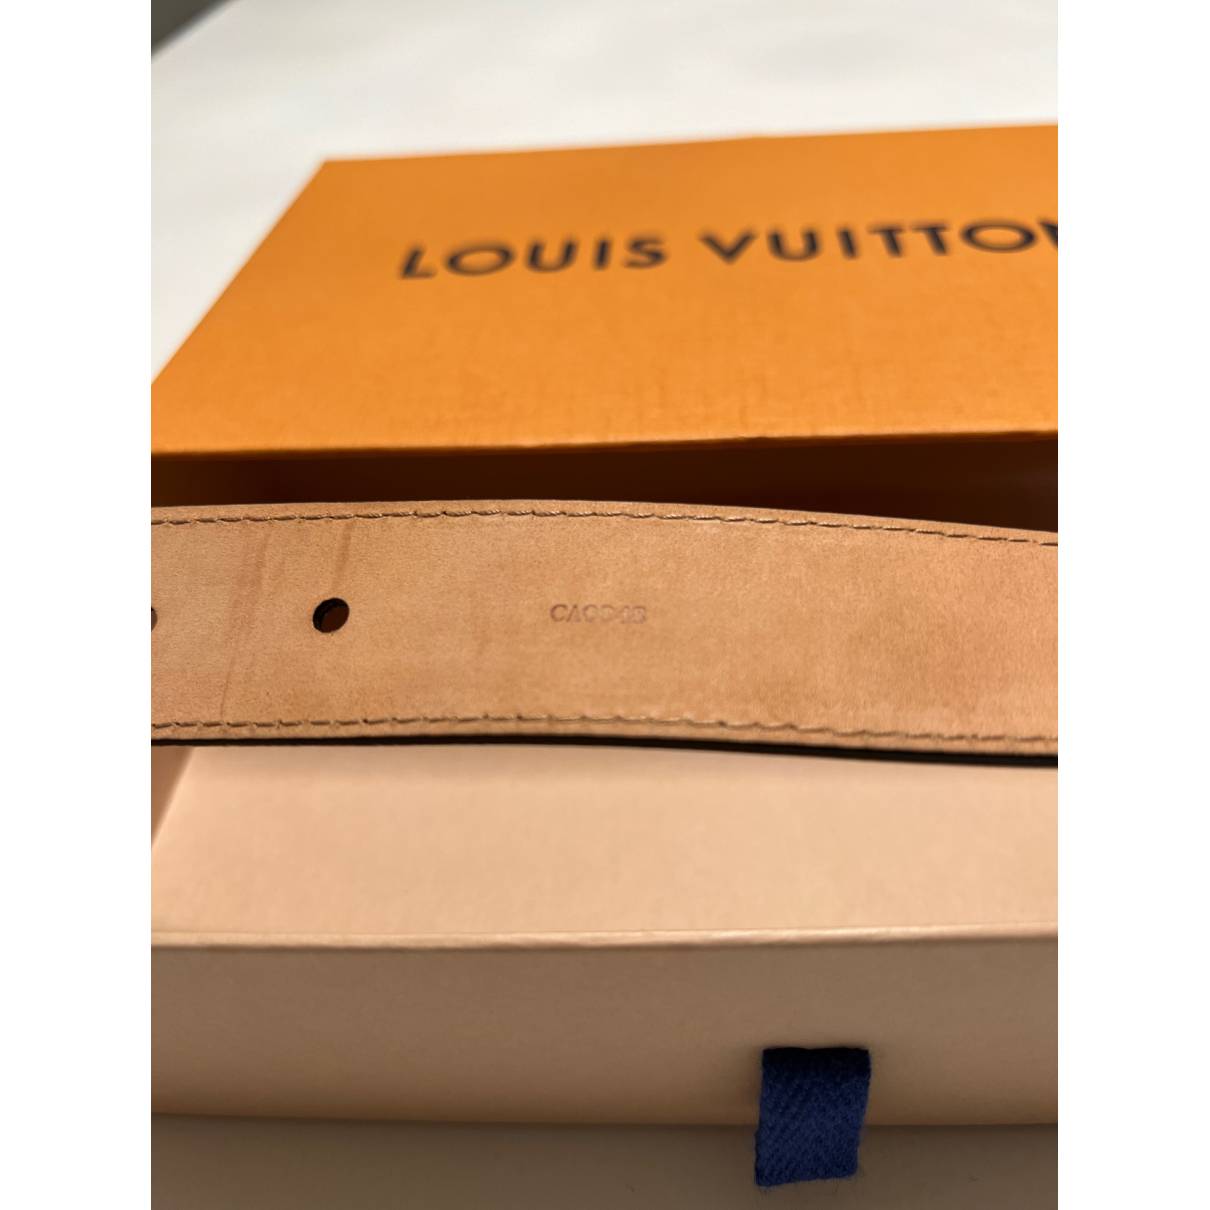 Louis Vuitton Initiales 40MM Matte Black Belt for Sale in White Oak